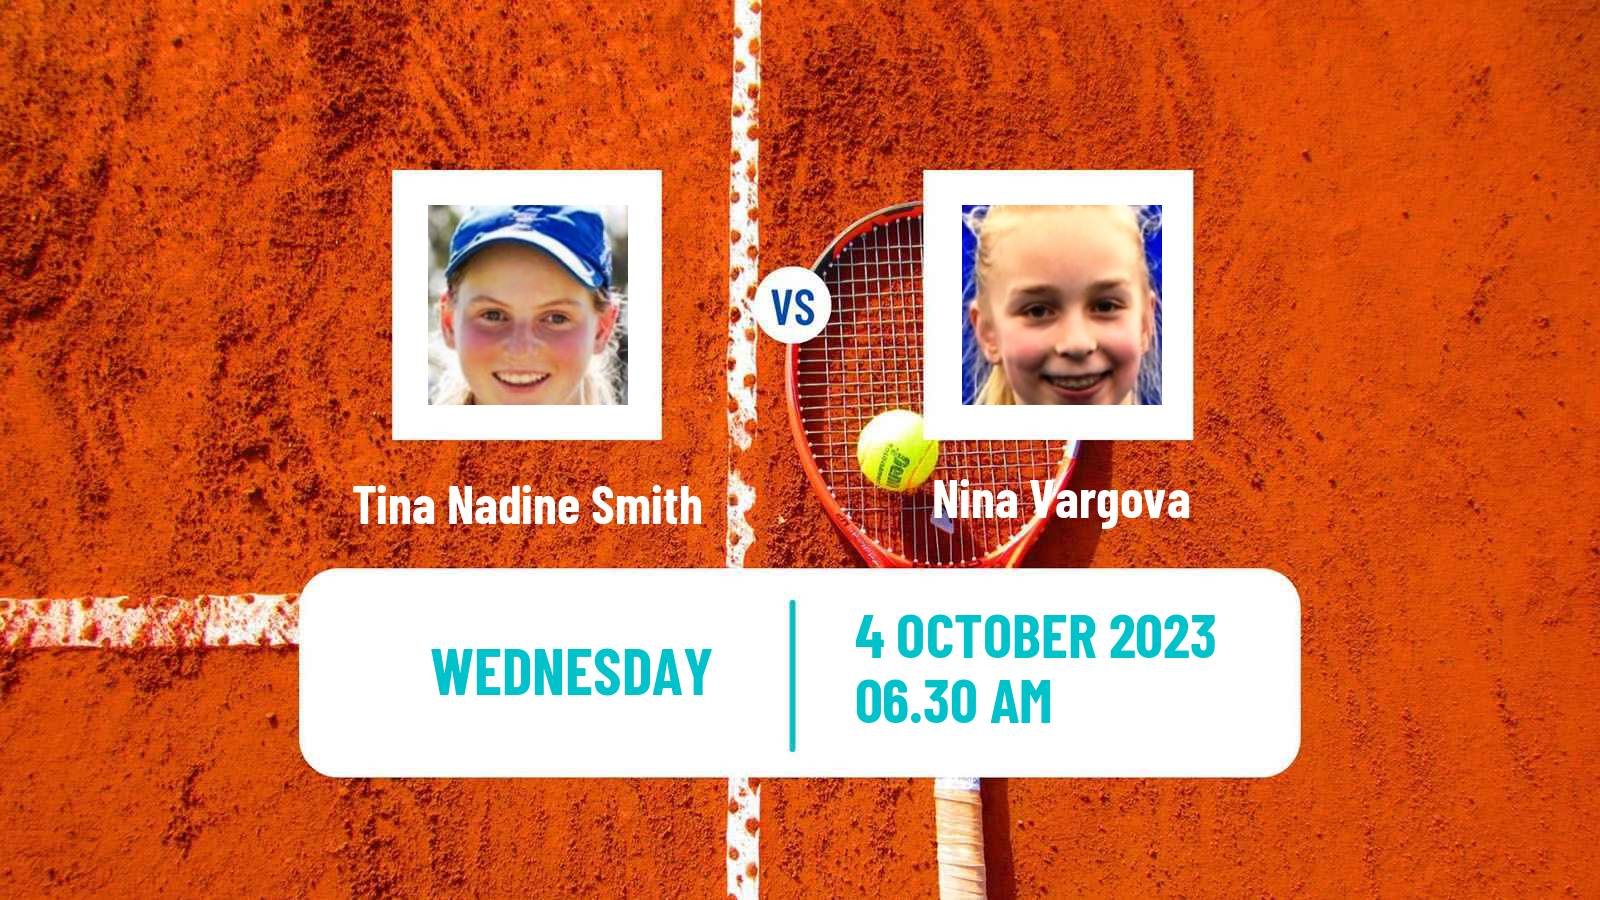 Tennis ITF W25 Santa Margherita Di Pula 8 Women Tina Nadine Smith - Nina Vargova